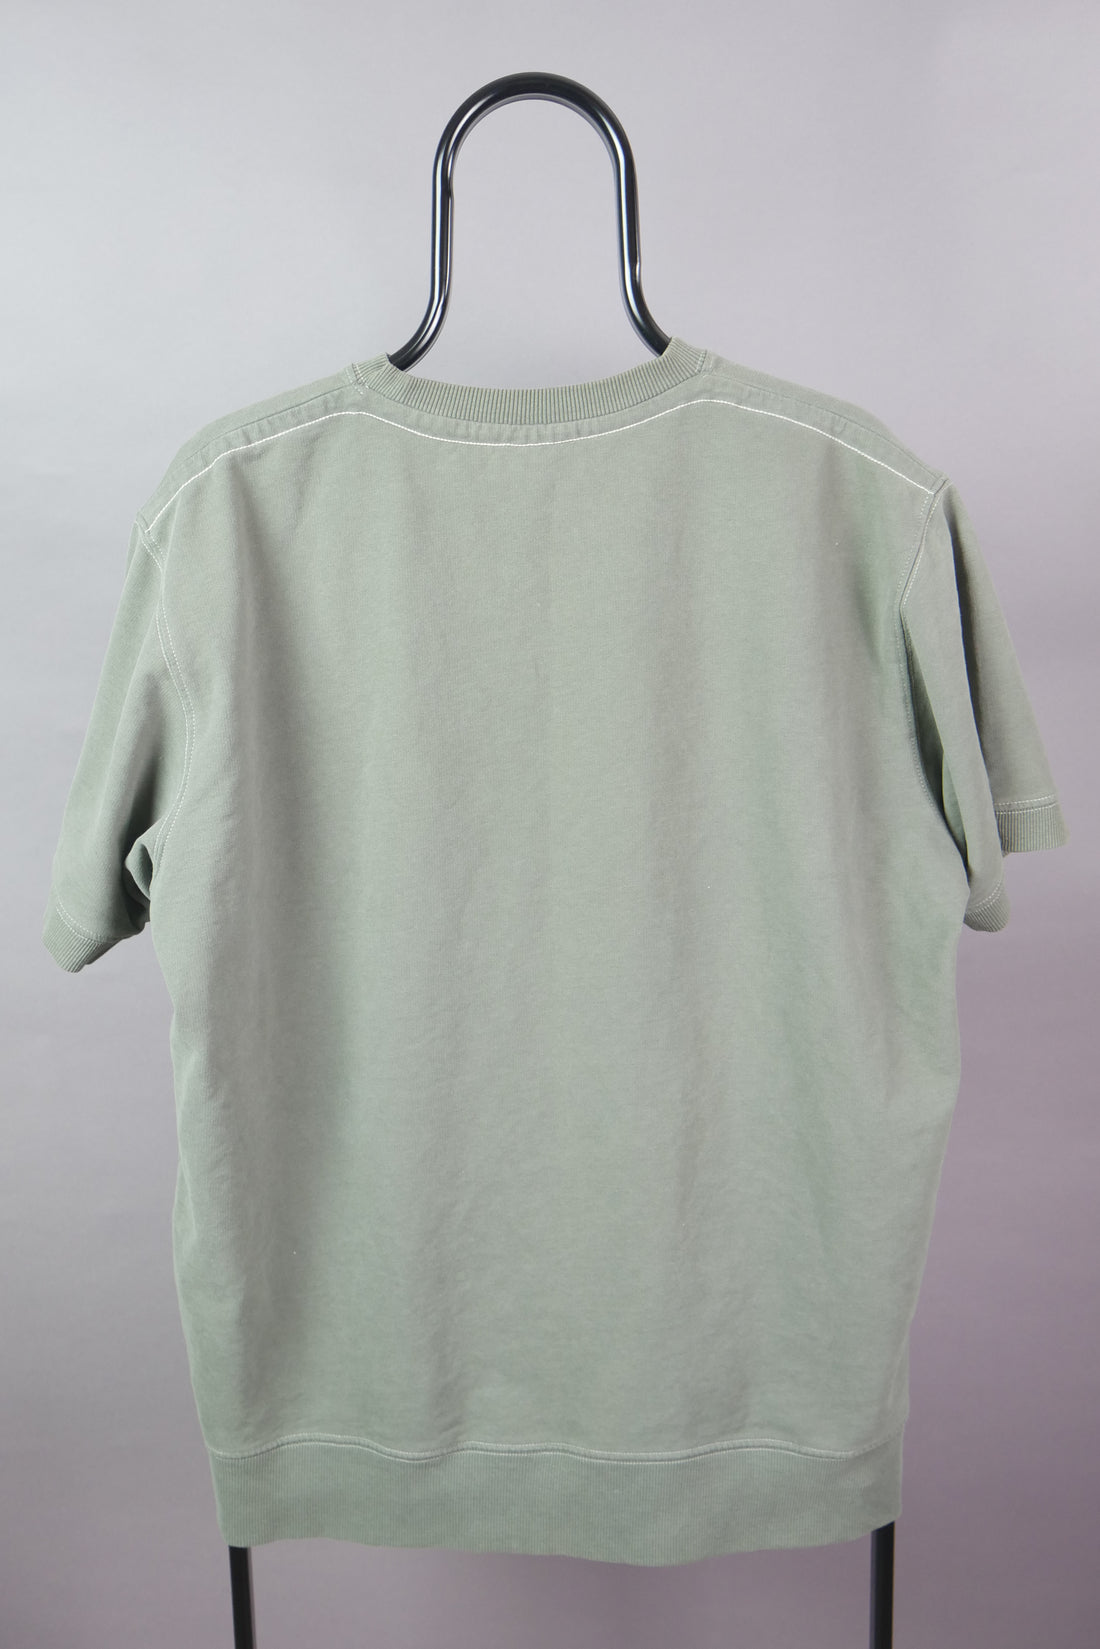 The Short Sleeve Sweatshirt (XL)